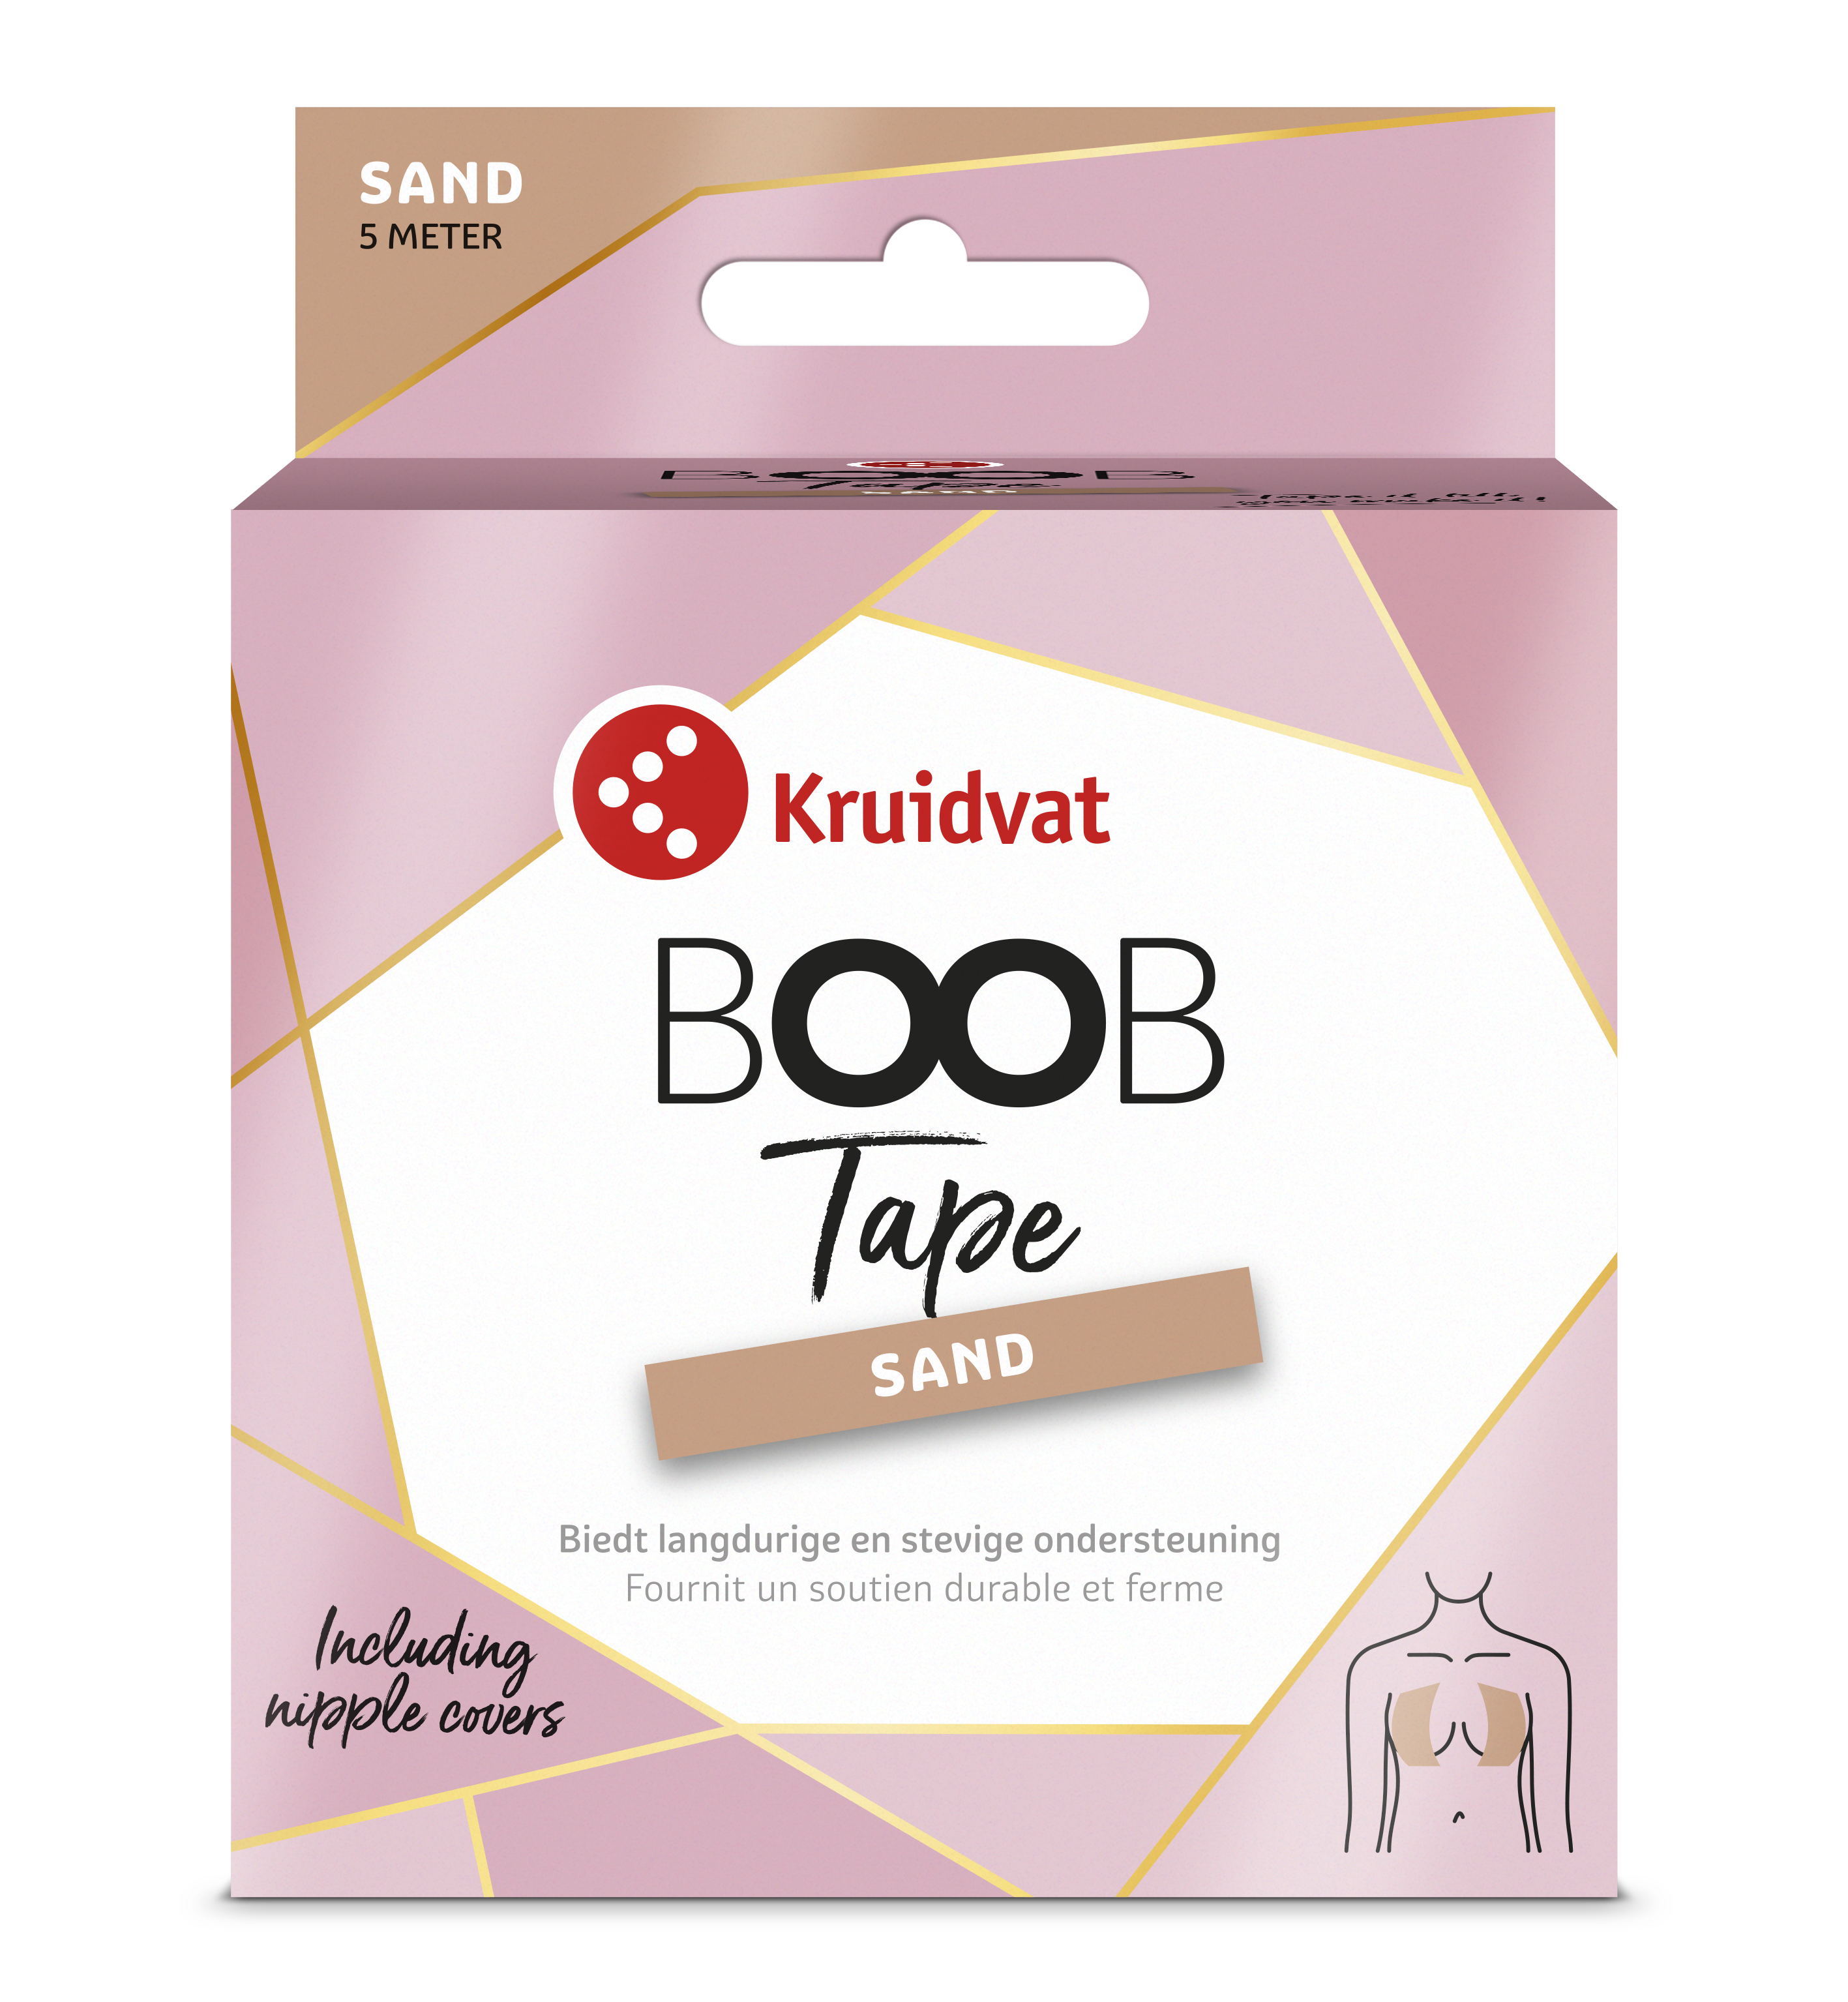 Draag je favoriete zonder stress met de nieuwe Kruidvat Boob Tape